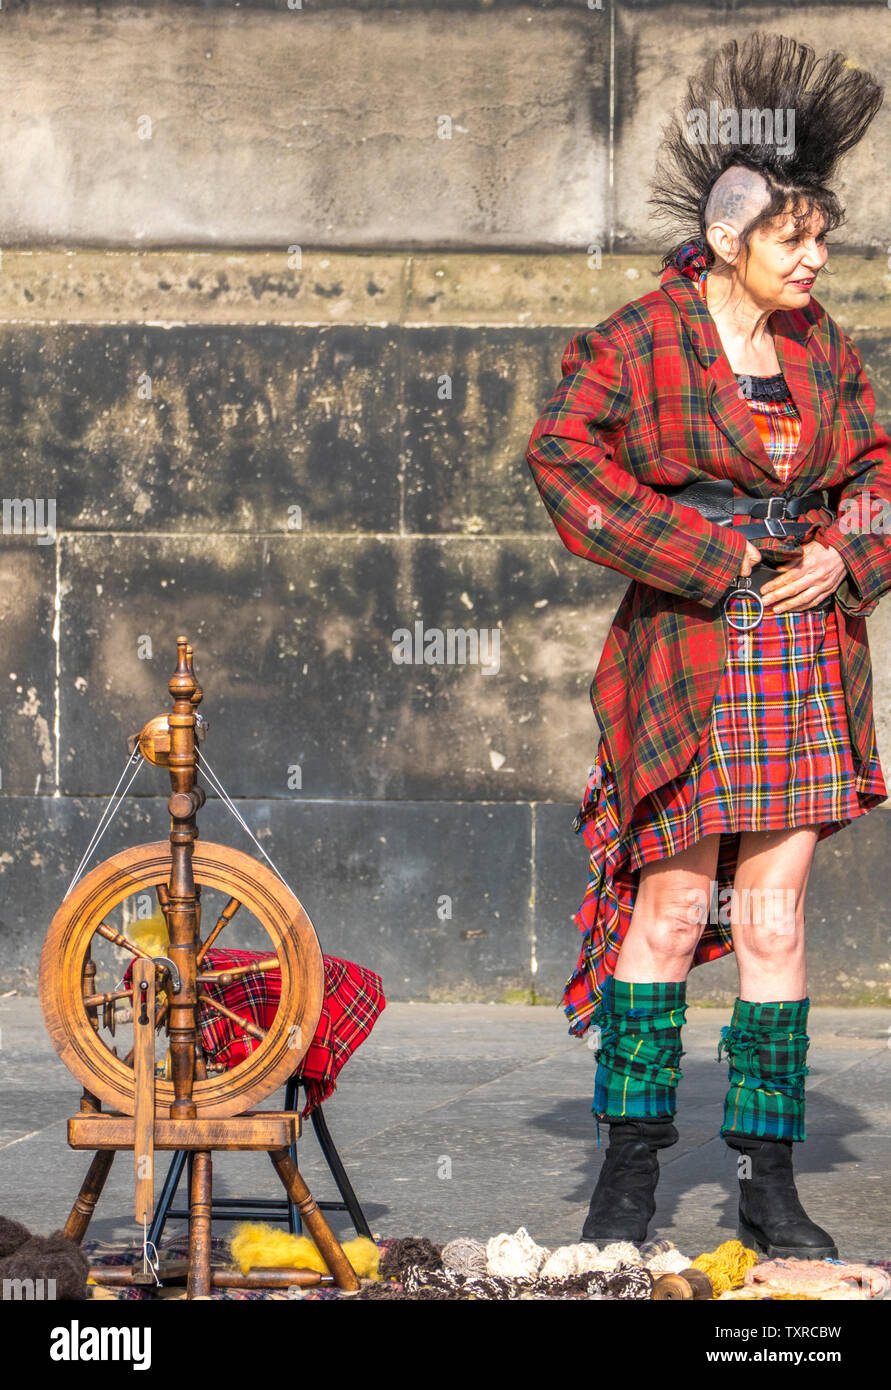 Royal Mile d'édimbourg attractions touristiques - une femme plus âgée avec des cheveux hérissés et tartan outfit, debout sur une machine à filer la laine traditionnelle. Banque D'Images